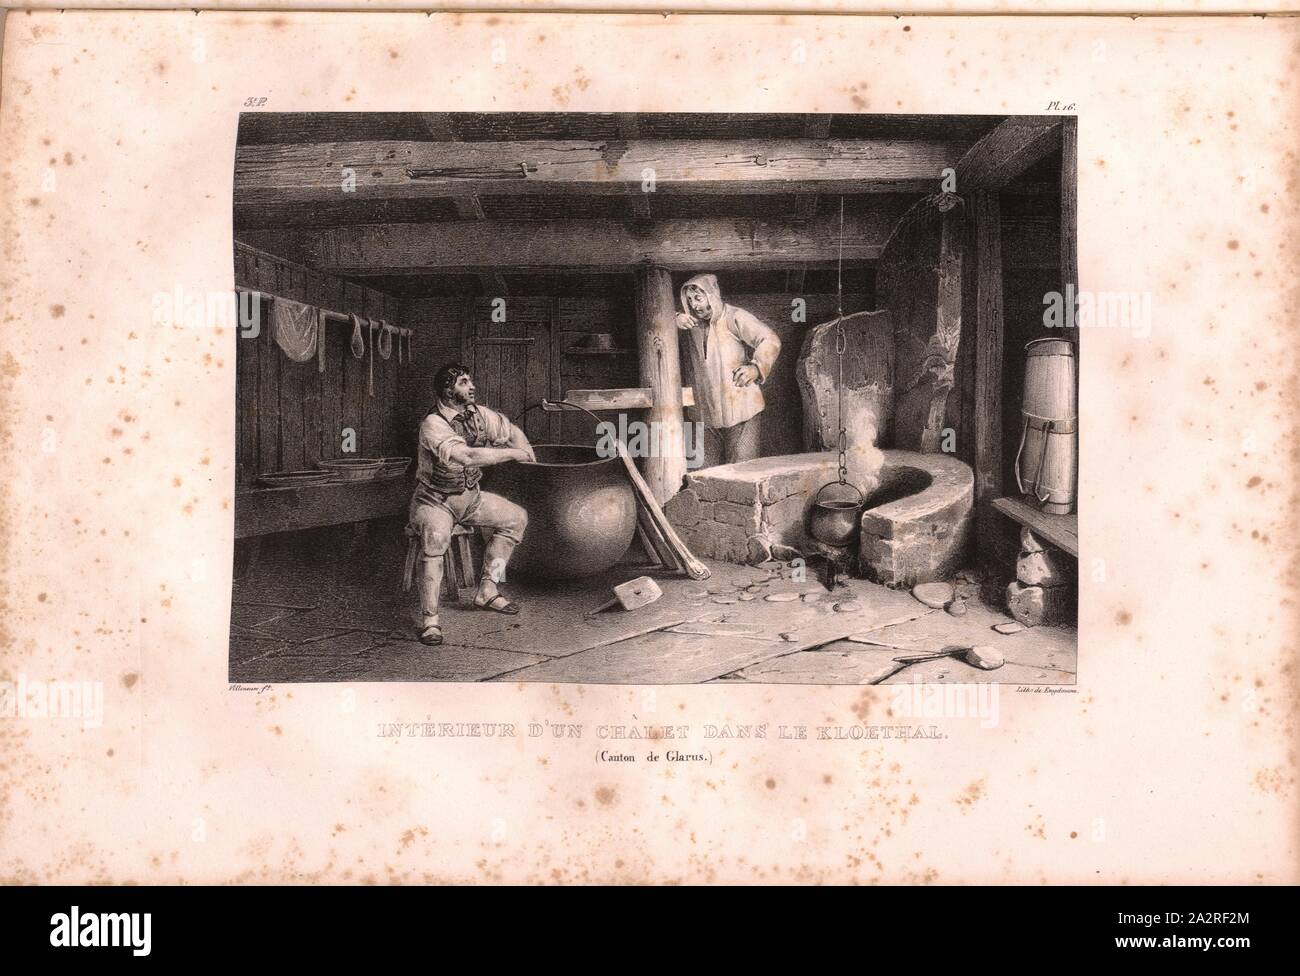 Interior of a chalet in the Kloethal, Alpine hut in Klöntal, signed: Villeneuve, Engelmann, lithograph, plate 16 (vol. 1, part 3), Villeneuve, M. (ft.); Engelmann, Godefroy (lith.), 1823, Hilaire Léon Sazerac, Godefroy Engelmann: Lettres sur la Suisse (...). Paris: [s.n.], 1823-1832 Stock Photo